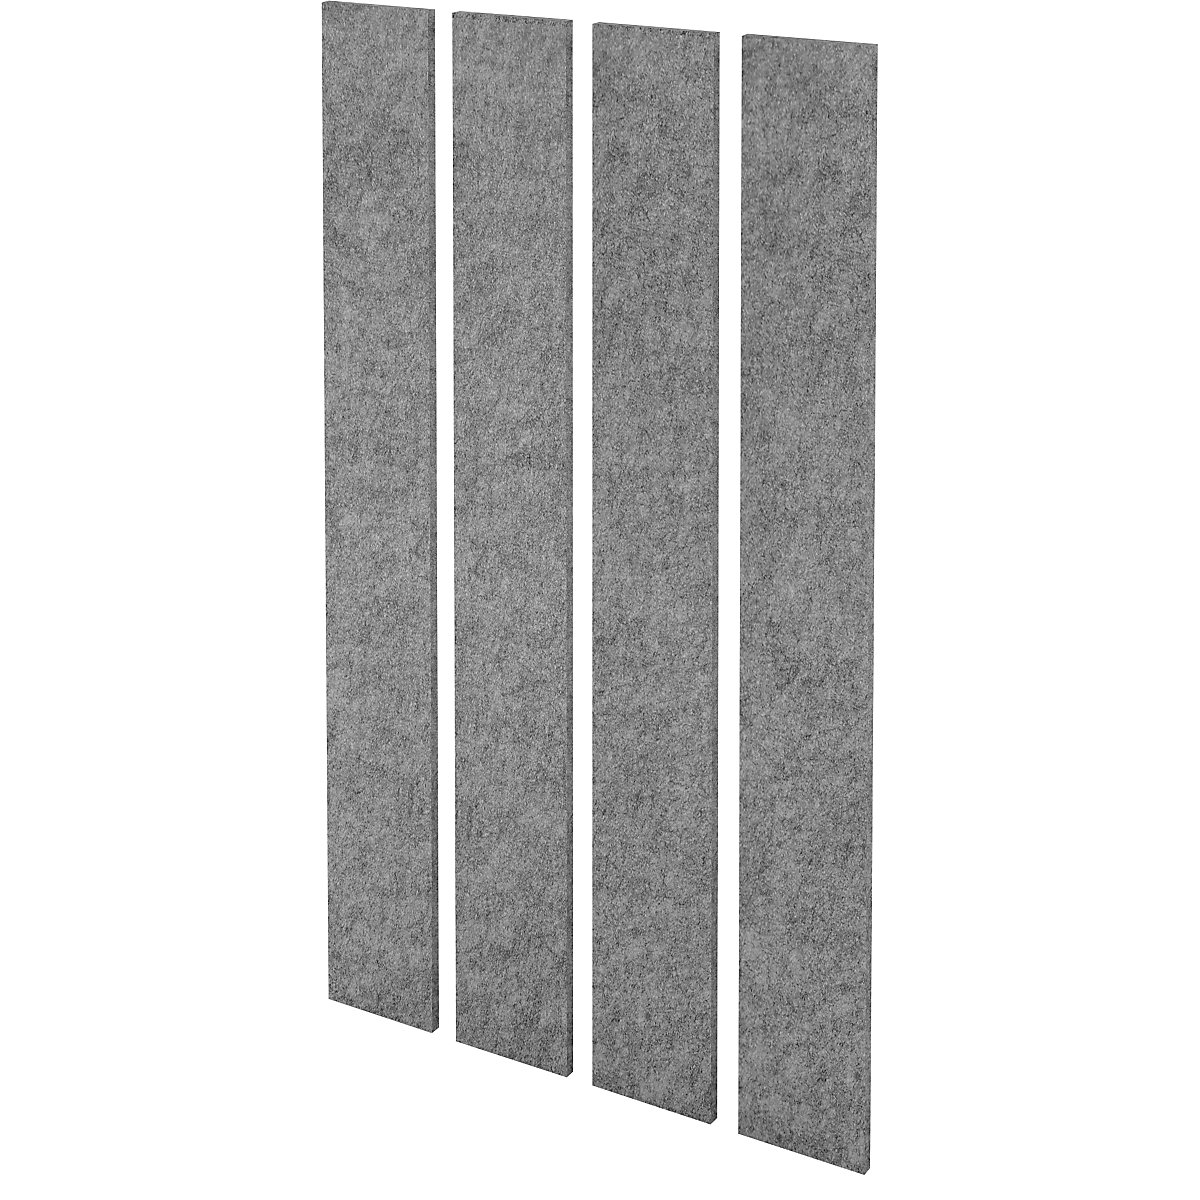 Komplet stenskih plošč z zvočno izolacijo, debelina stene 25 mm, sive melirane barve, DE 4 kosi, VxŠ 2000 x 250 mm